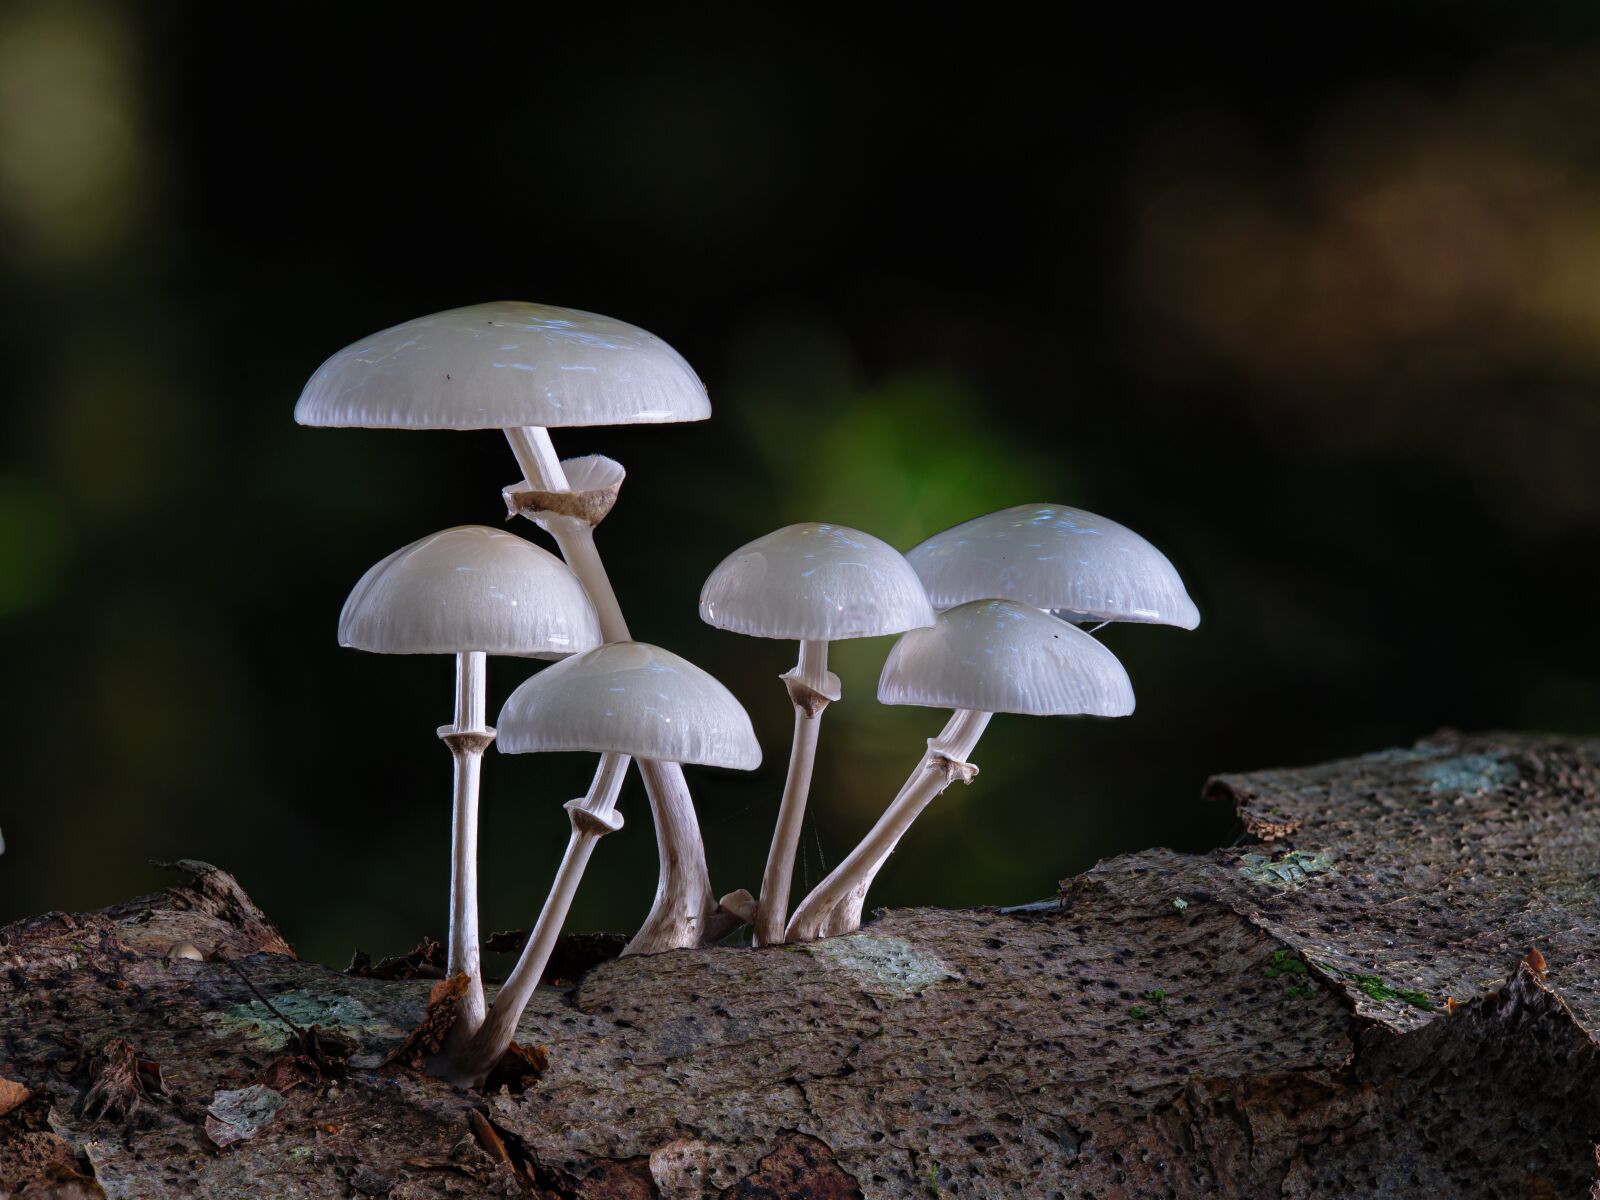 Panasonic Lumix DC-G9 + Olympus M.Zuiko Digital ED 60mm F2.8 Macro sample photo. Mushrooms, mushroom, edible photography